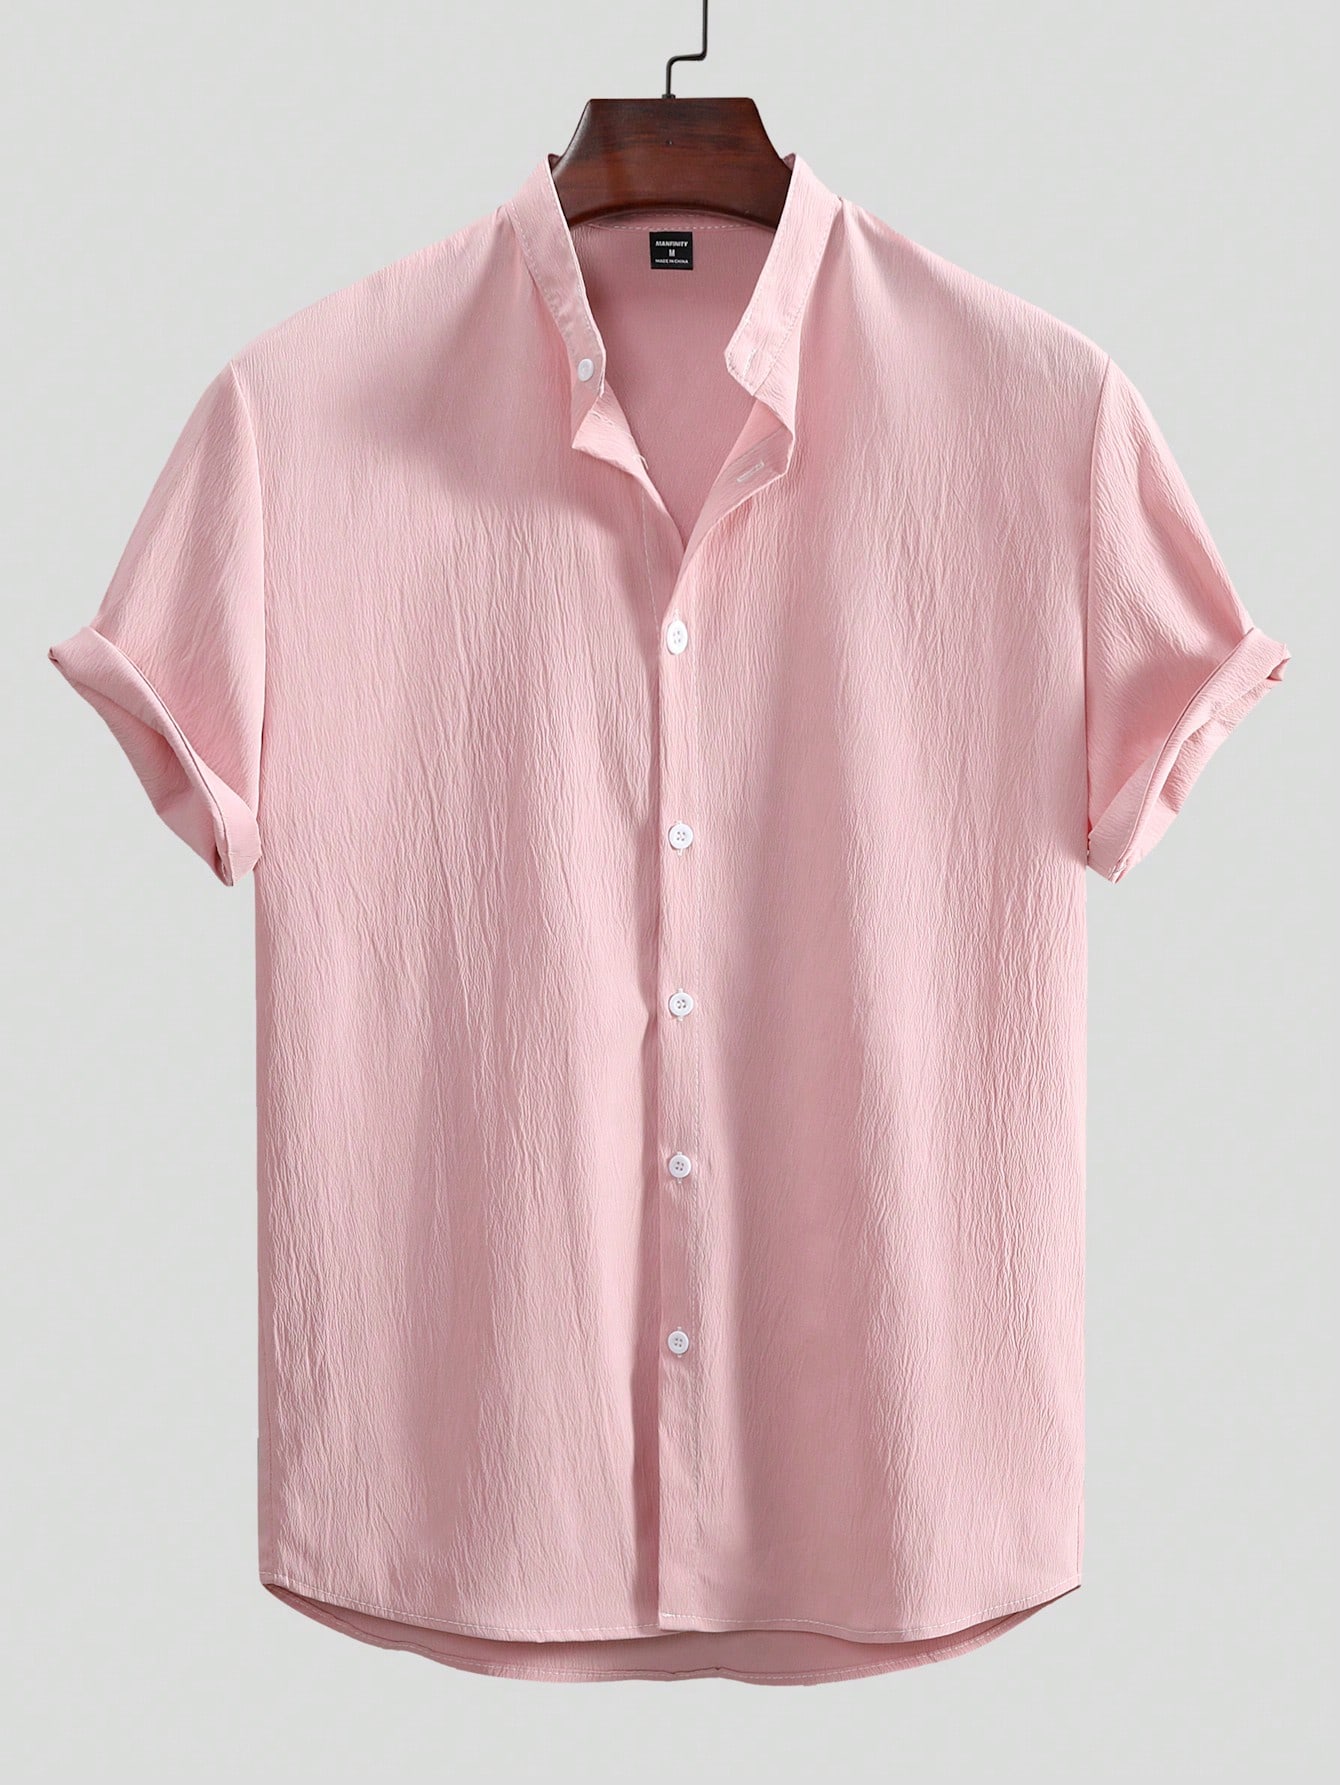 Мужская текстурированная рубашка с коротким рукавом Manfinity Homme на пуговицах спереди, розовый мужская однотонная повседневная рубашка с длинным рукавом черный